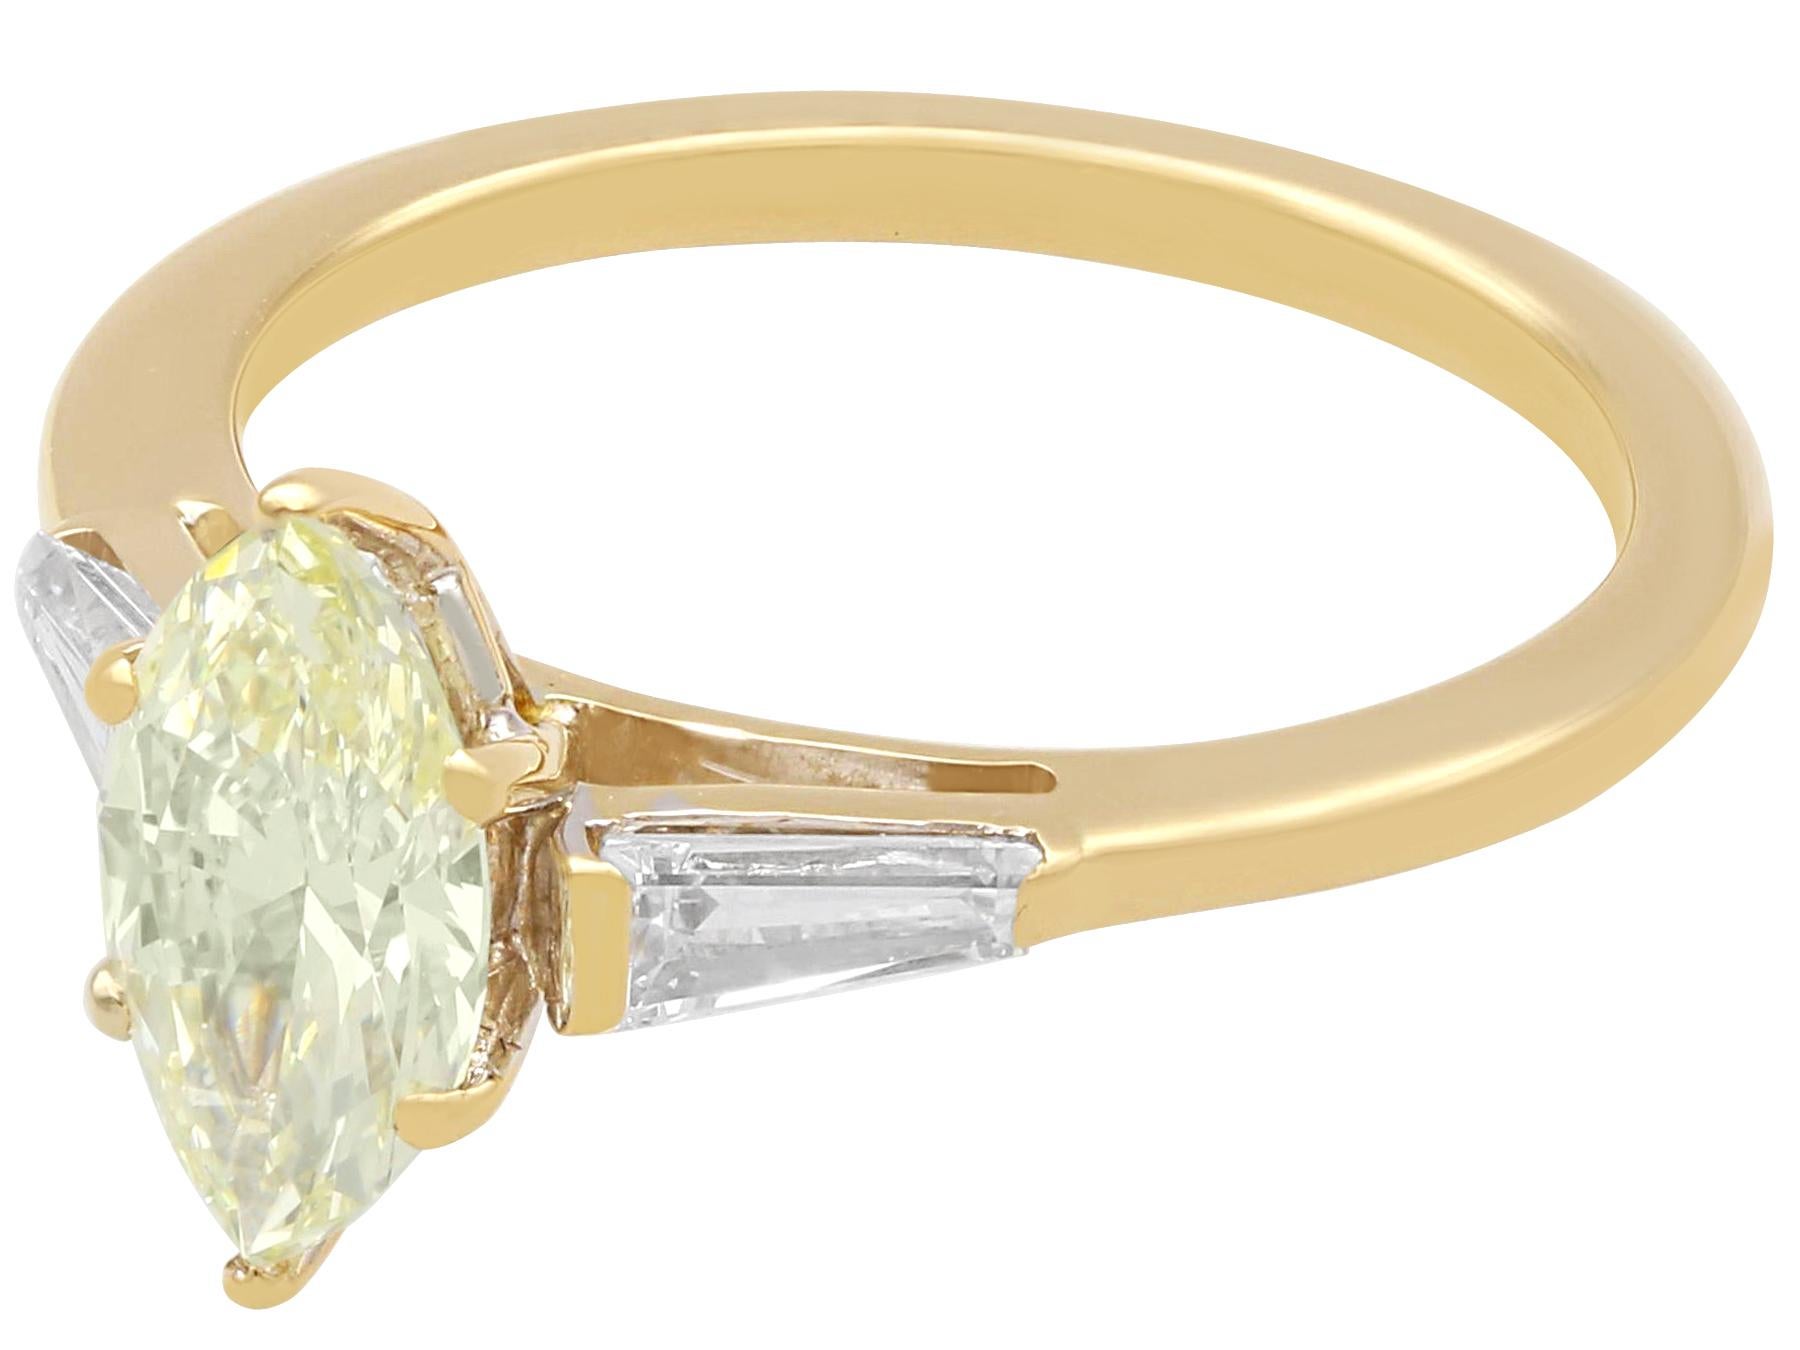 Une bague solitaire en or jaune 18 carats et diamant marquise jaune clair de 1,36 carat, qui fait partie de notre gamme variée de bijoux en diamant.

Cette magnifique bague de fiançailles contemporaine a été réalisée en or jaune 18 carats.

La